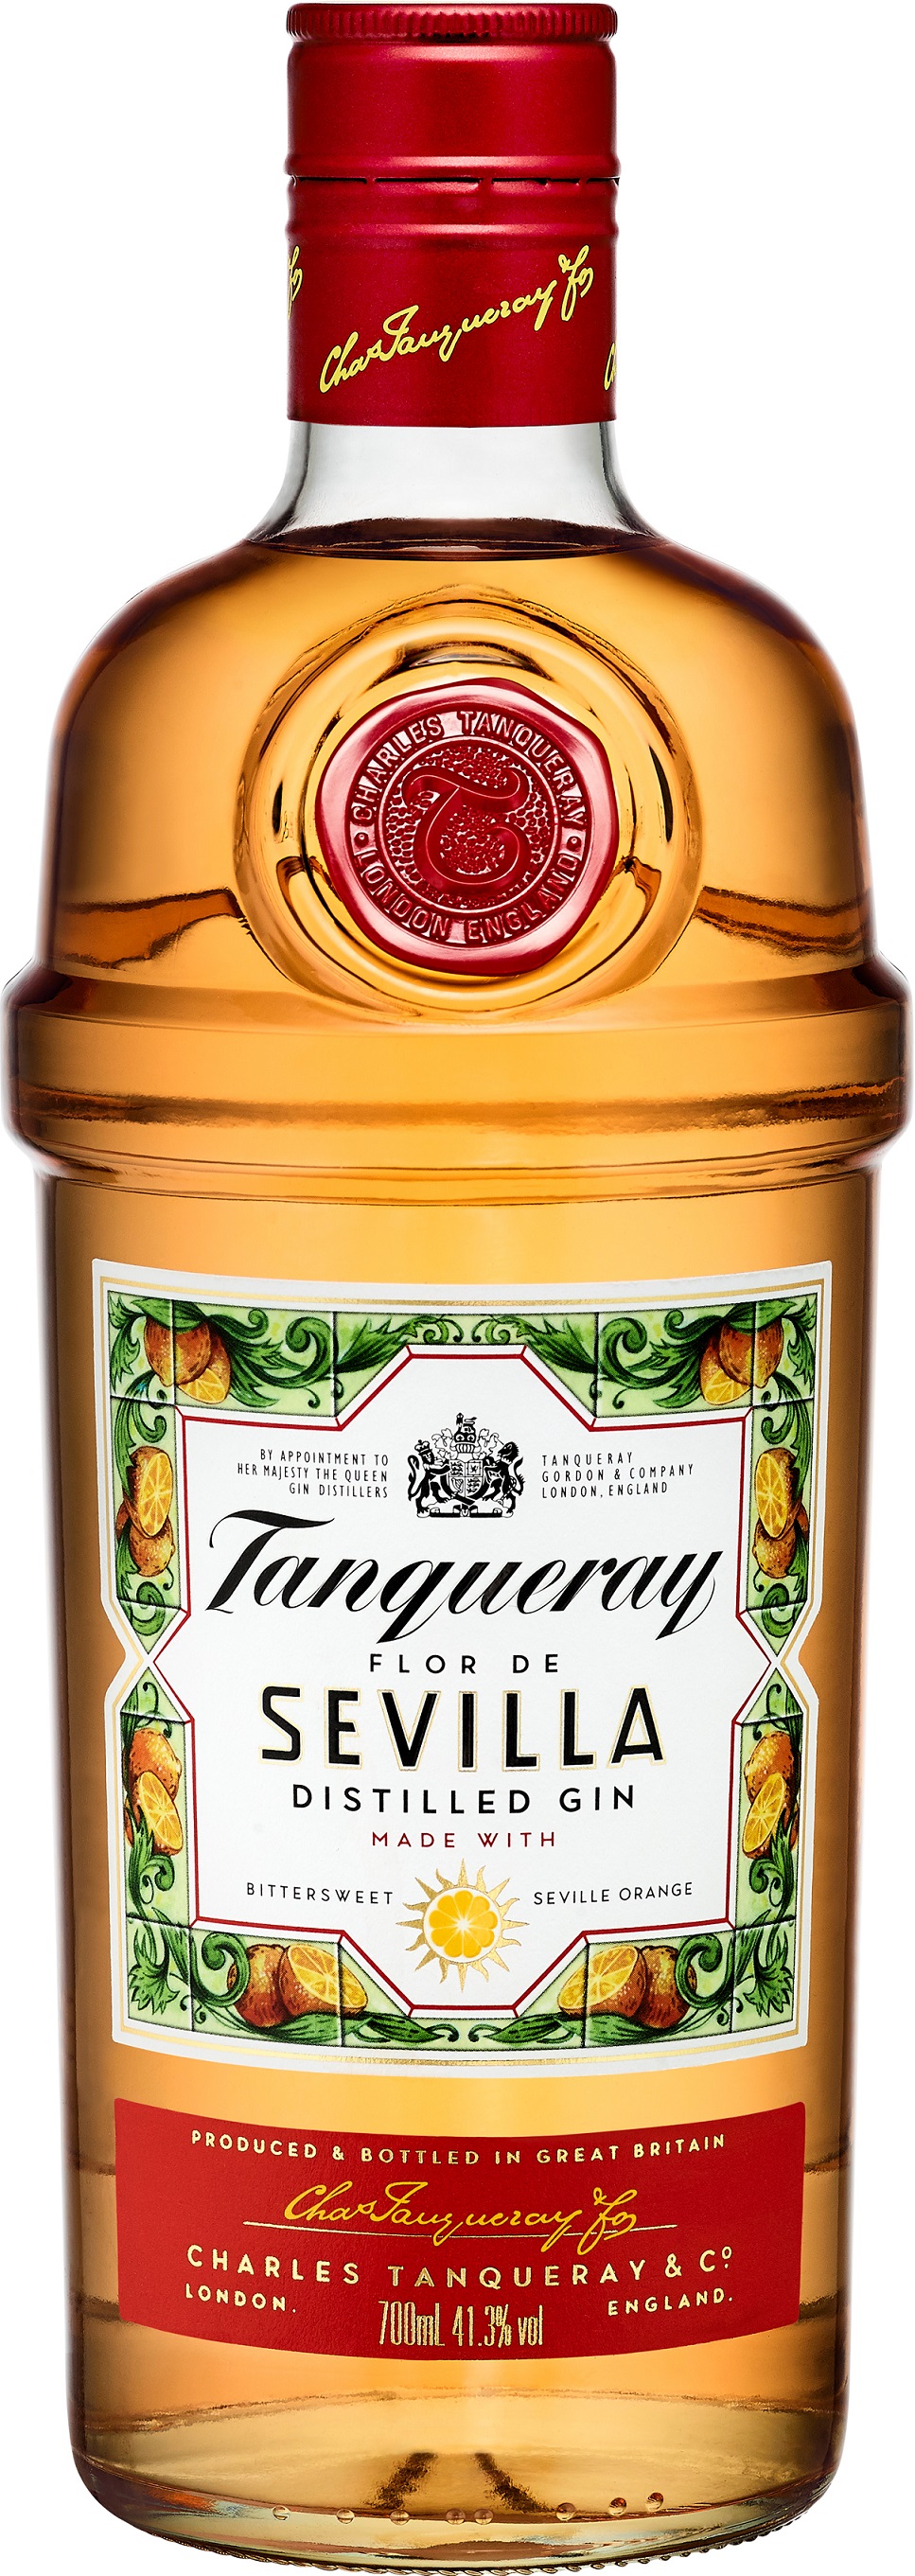 Tanqueray Flor de Sevilla 41.3% 0,7l